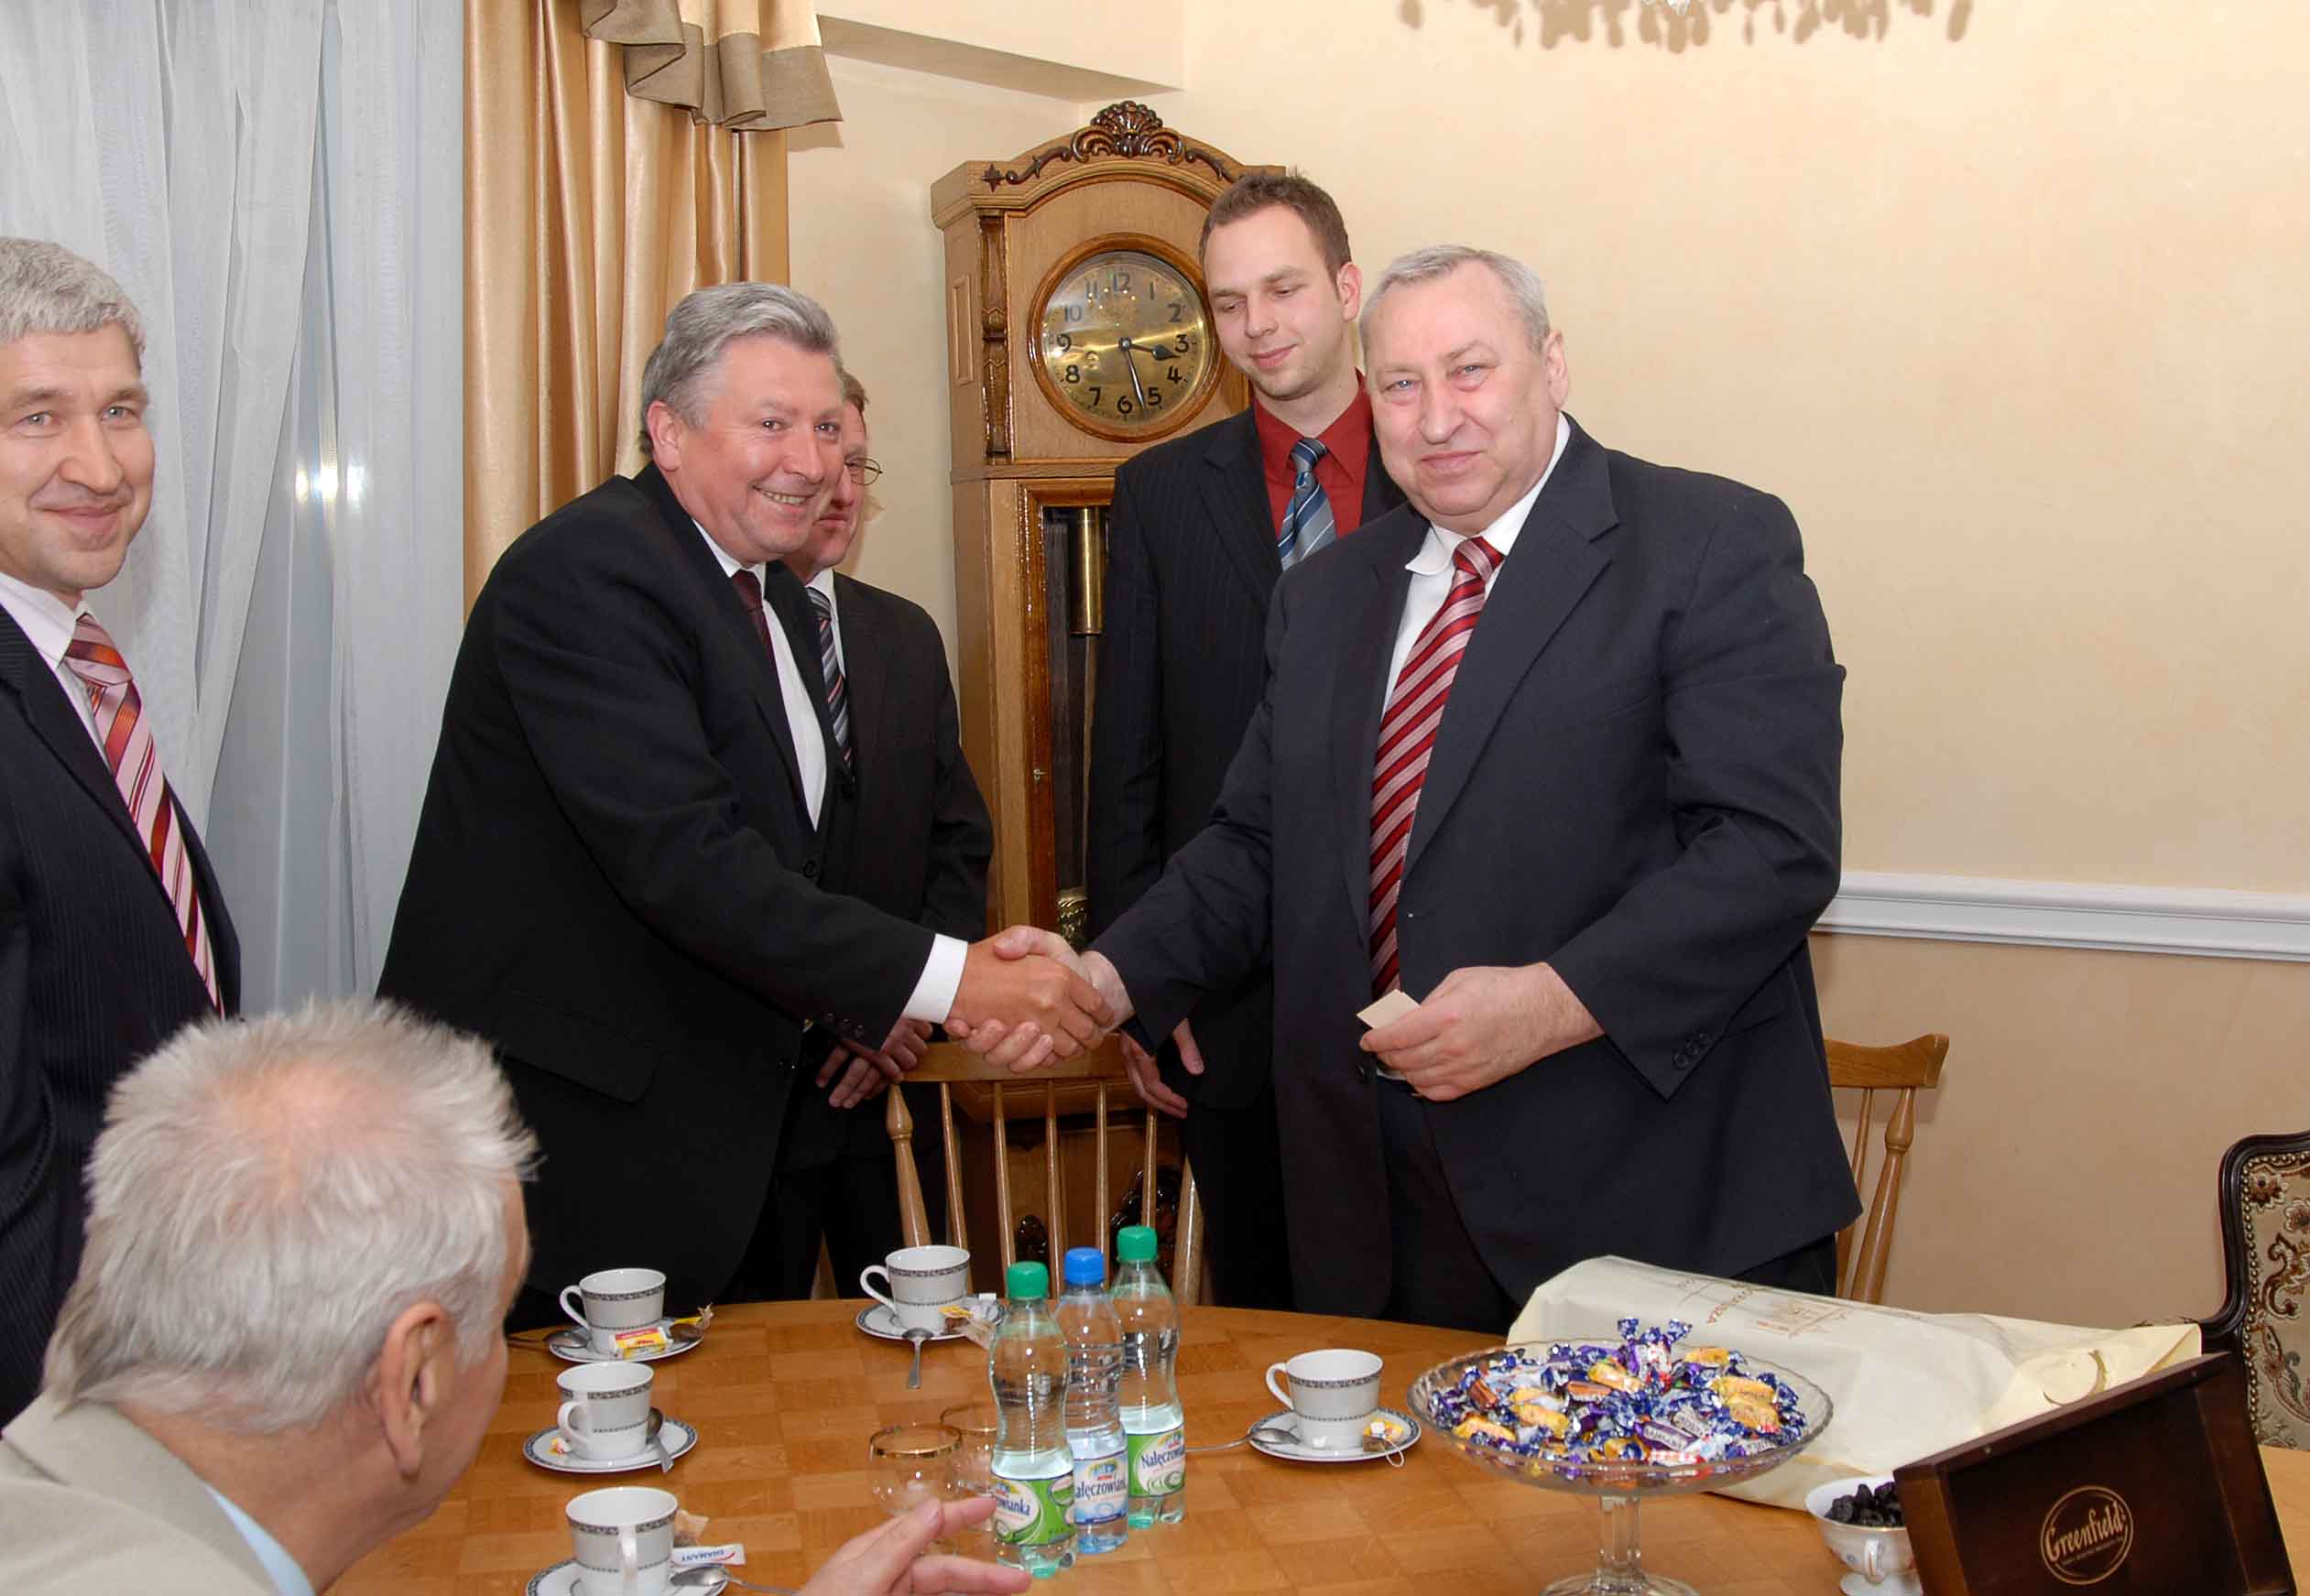 Burmistrz Mieczysaw Szymalski i przedstawiciel handlowy FR Nikoaj Zachmatow